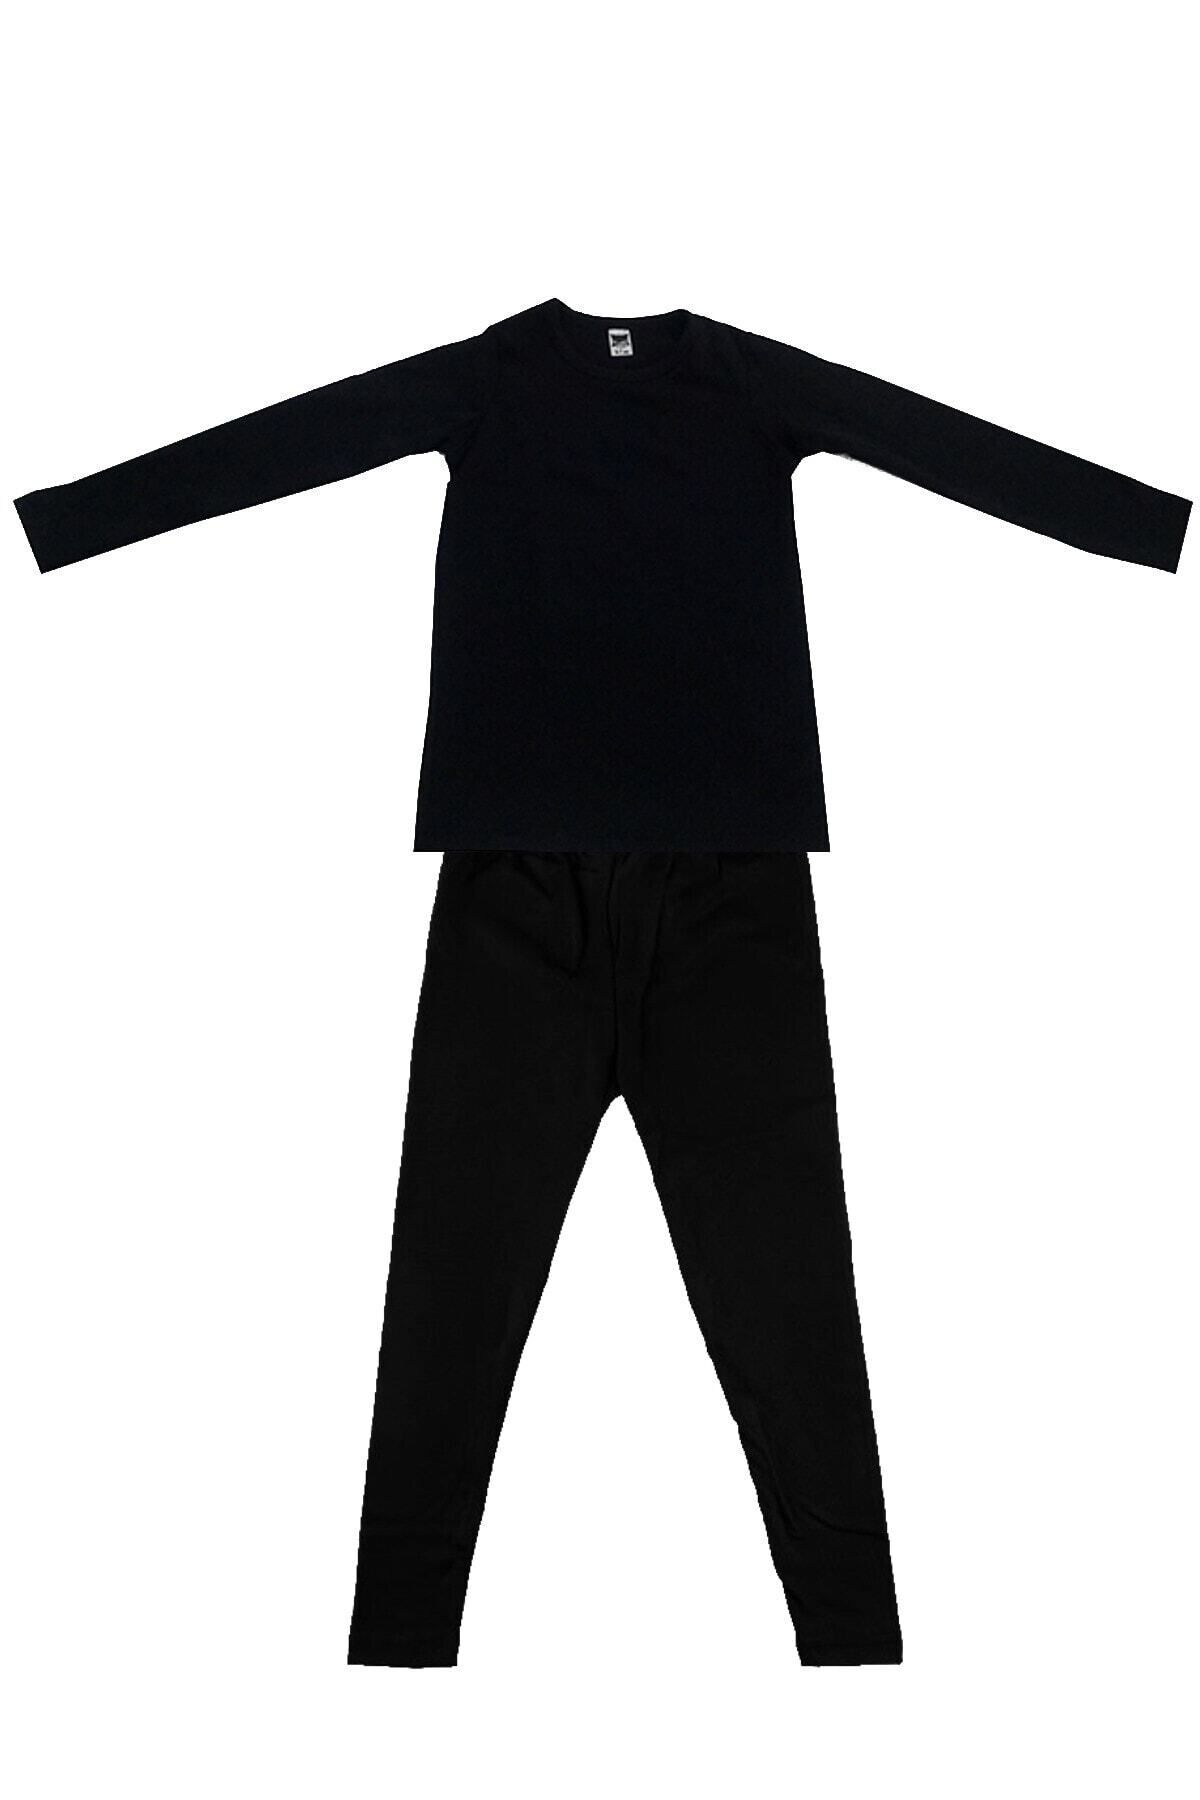 Tutku Çocuk Siyah Uzun Kol Viskon Şardonlu Takım Termal Giyim & Içlik